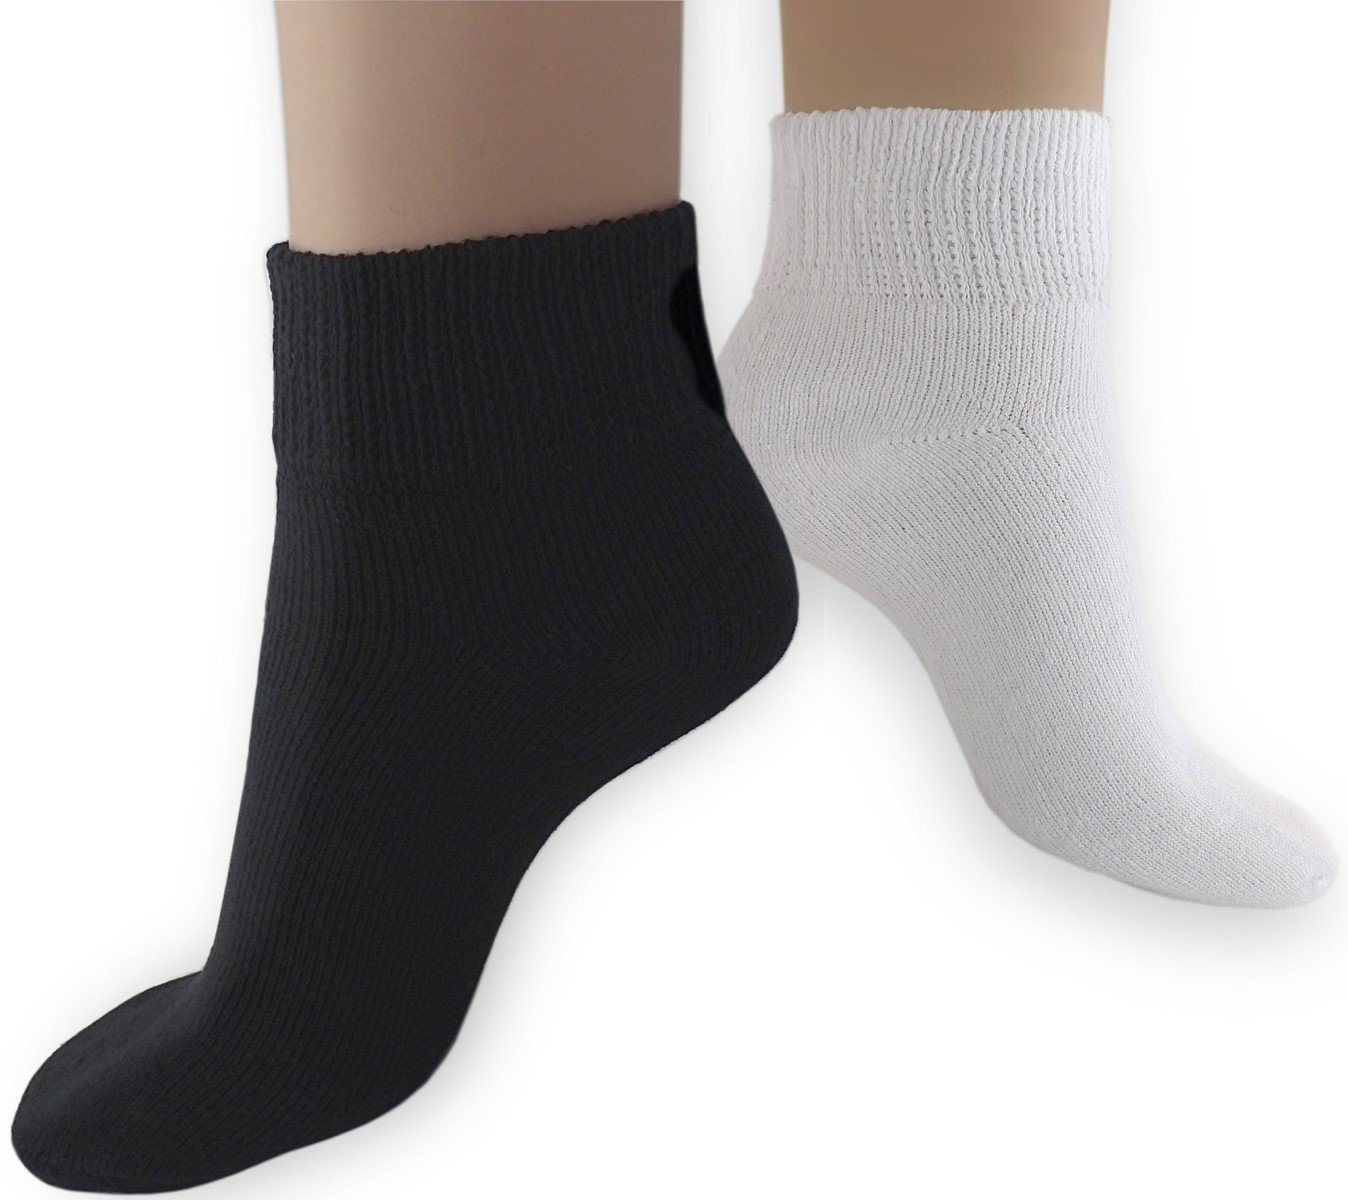 Diabetic Socks - Solid Black